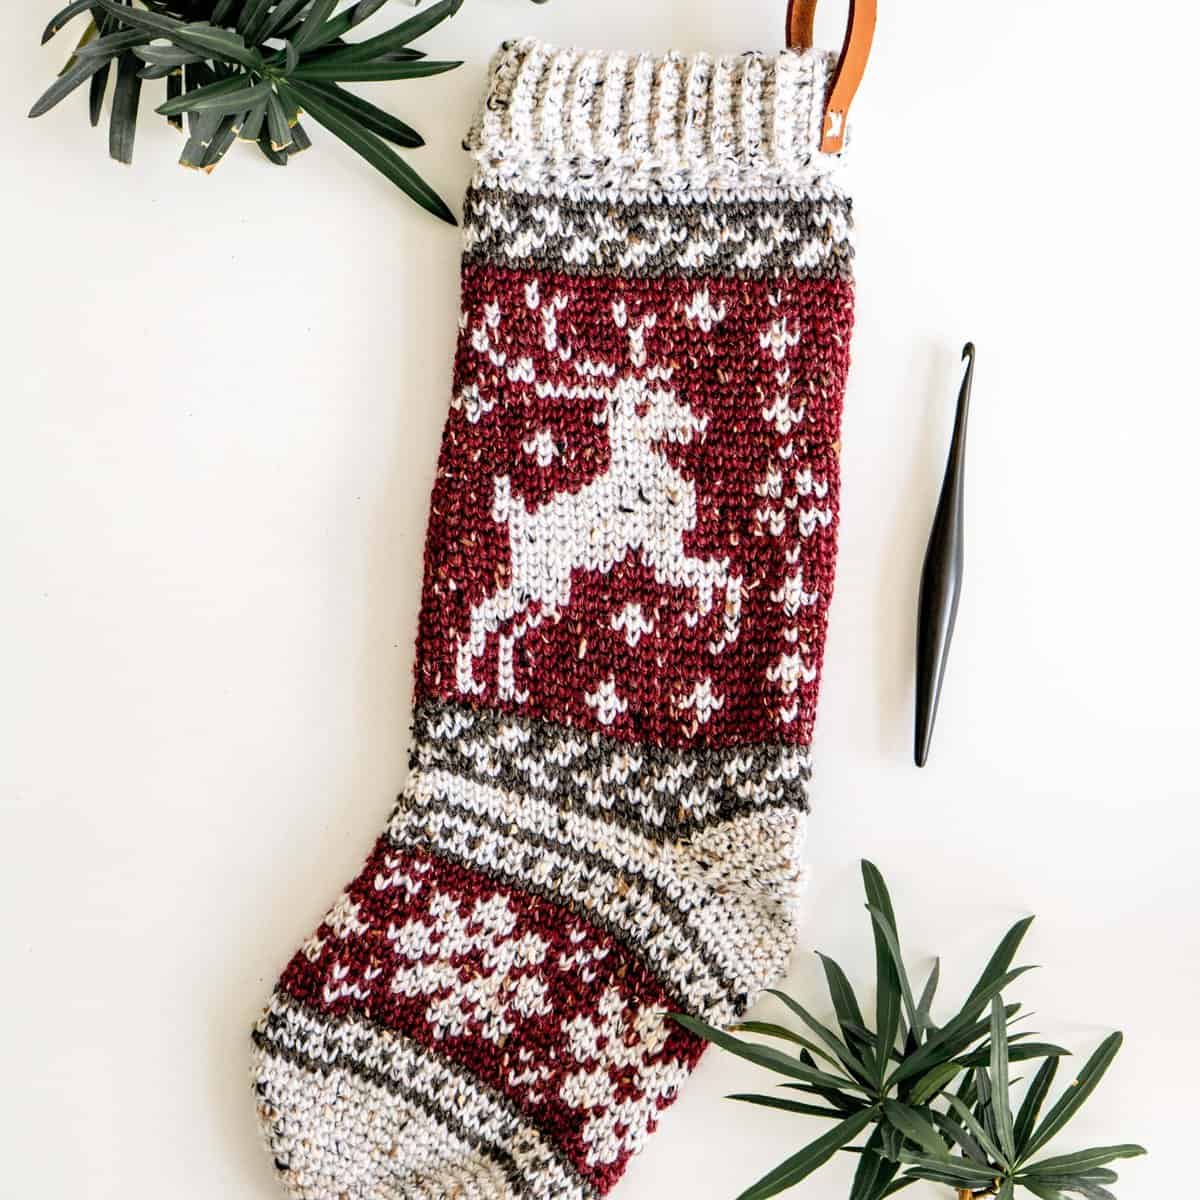 Prancing Deer Crochet & Knit Stocking Patterns